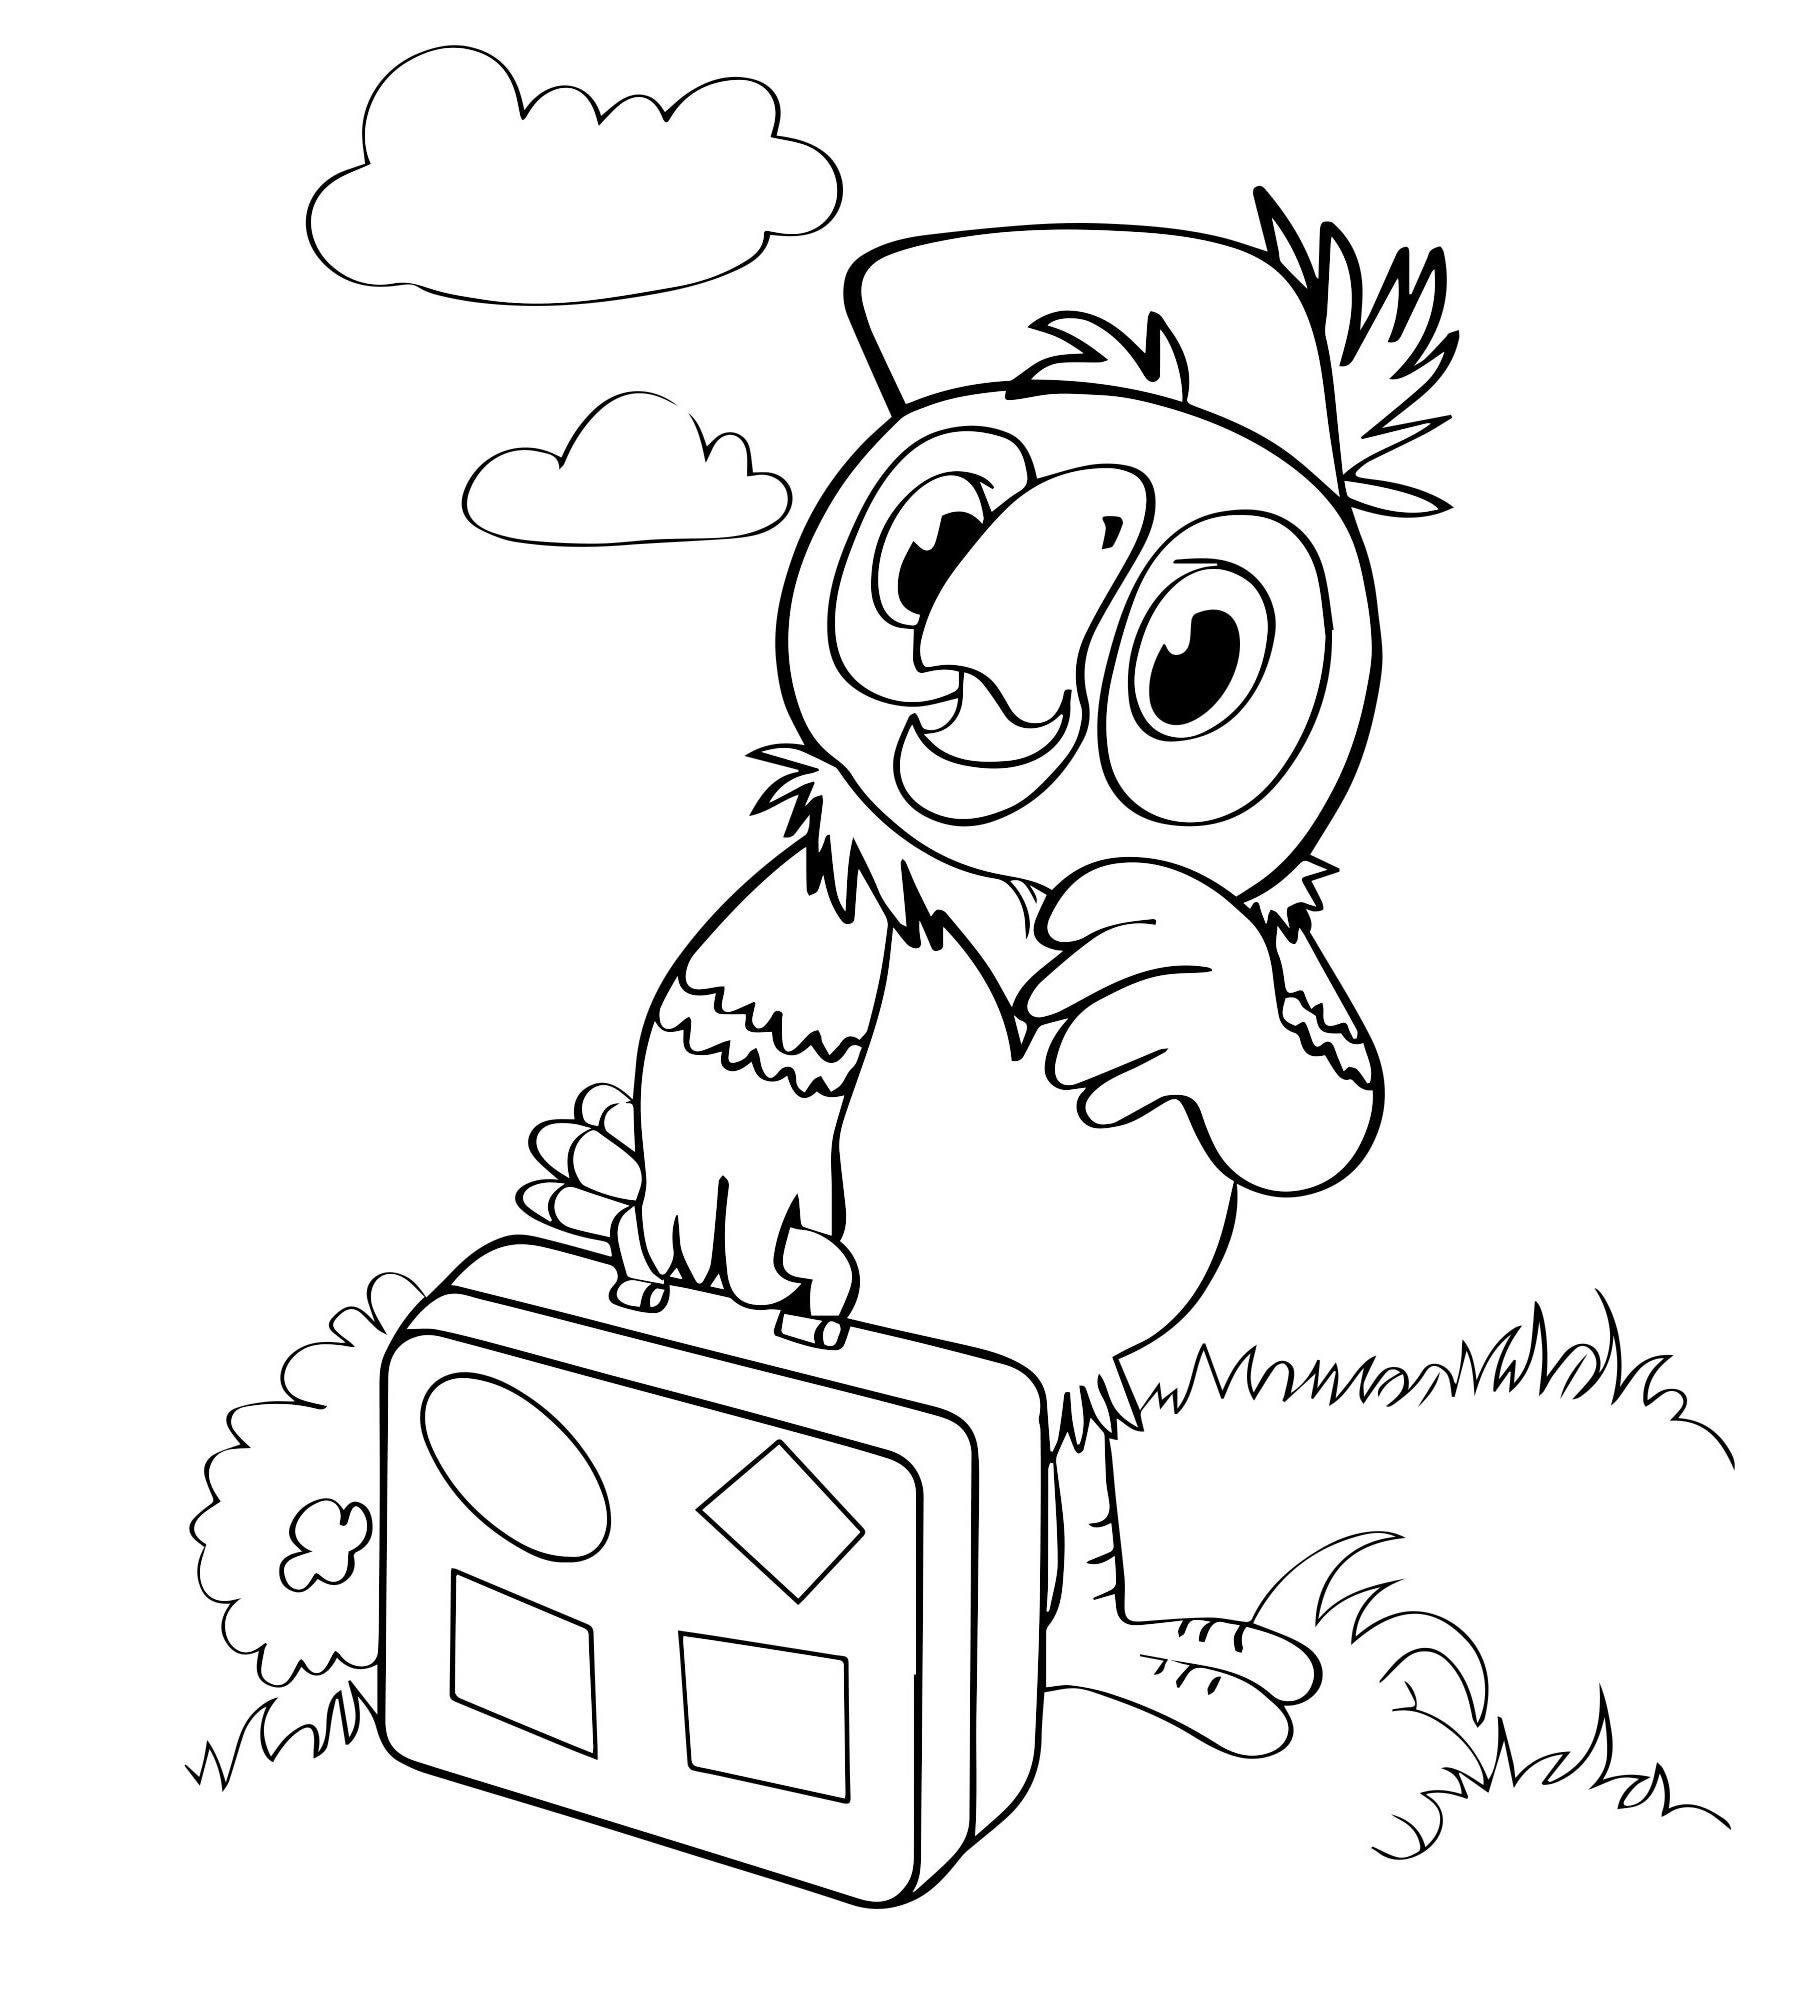 Попугай Кеша с чемоданом раскраска для детей